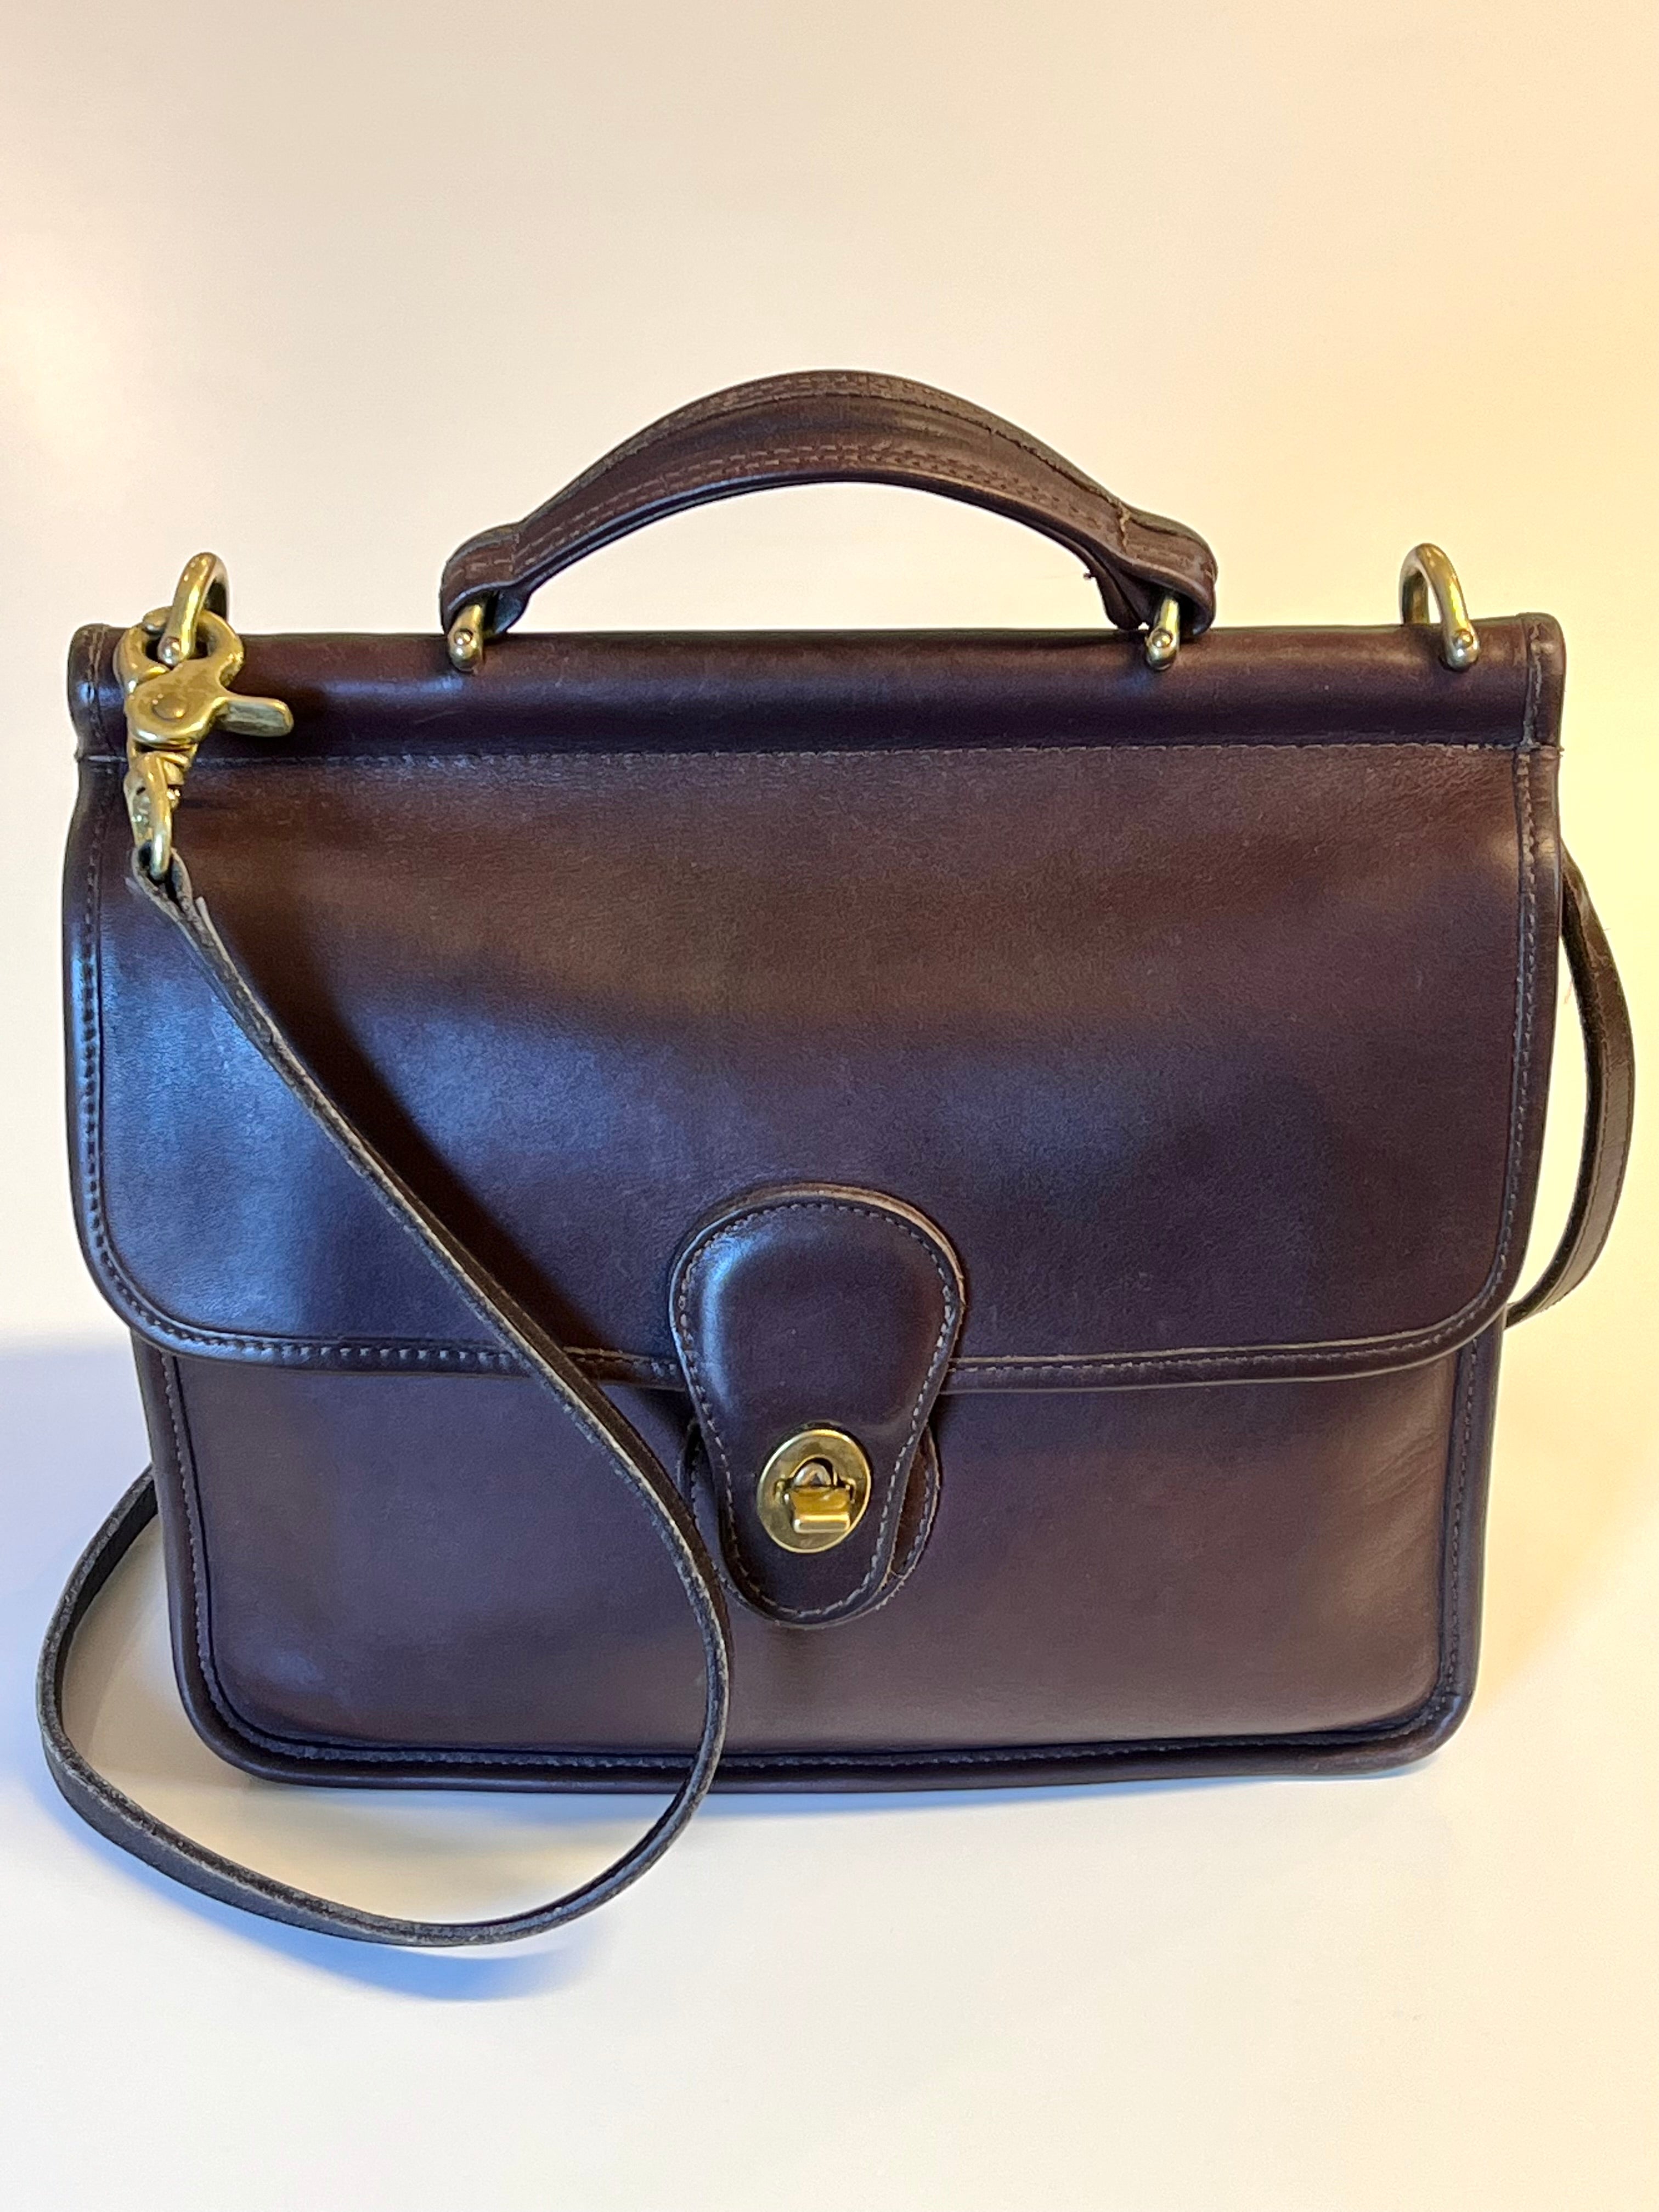 80's Vintage COACH dark brown leather shoulder bag, handbag in